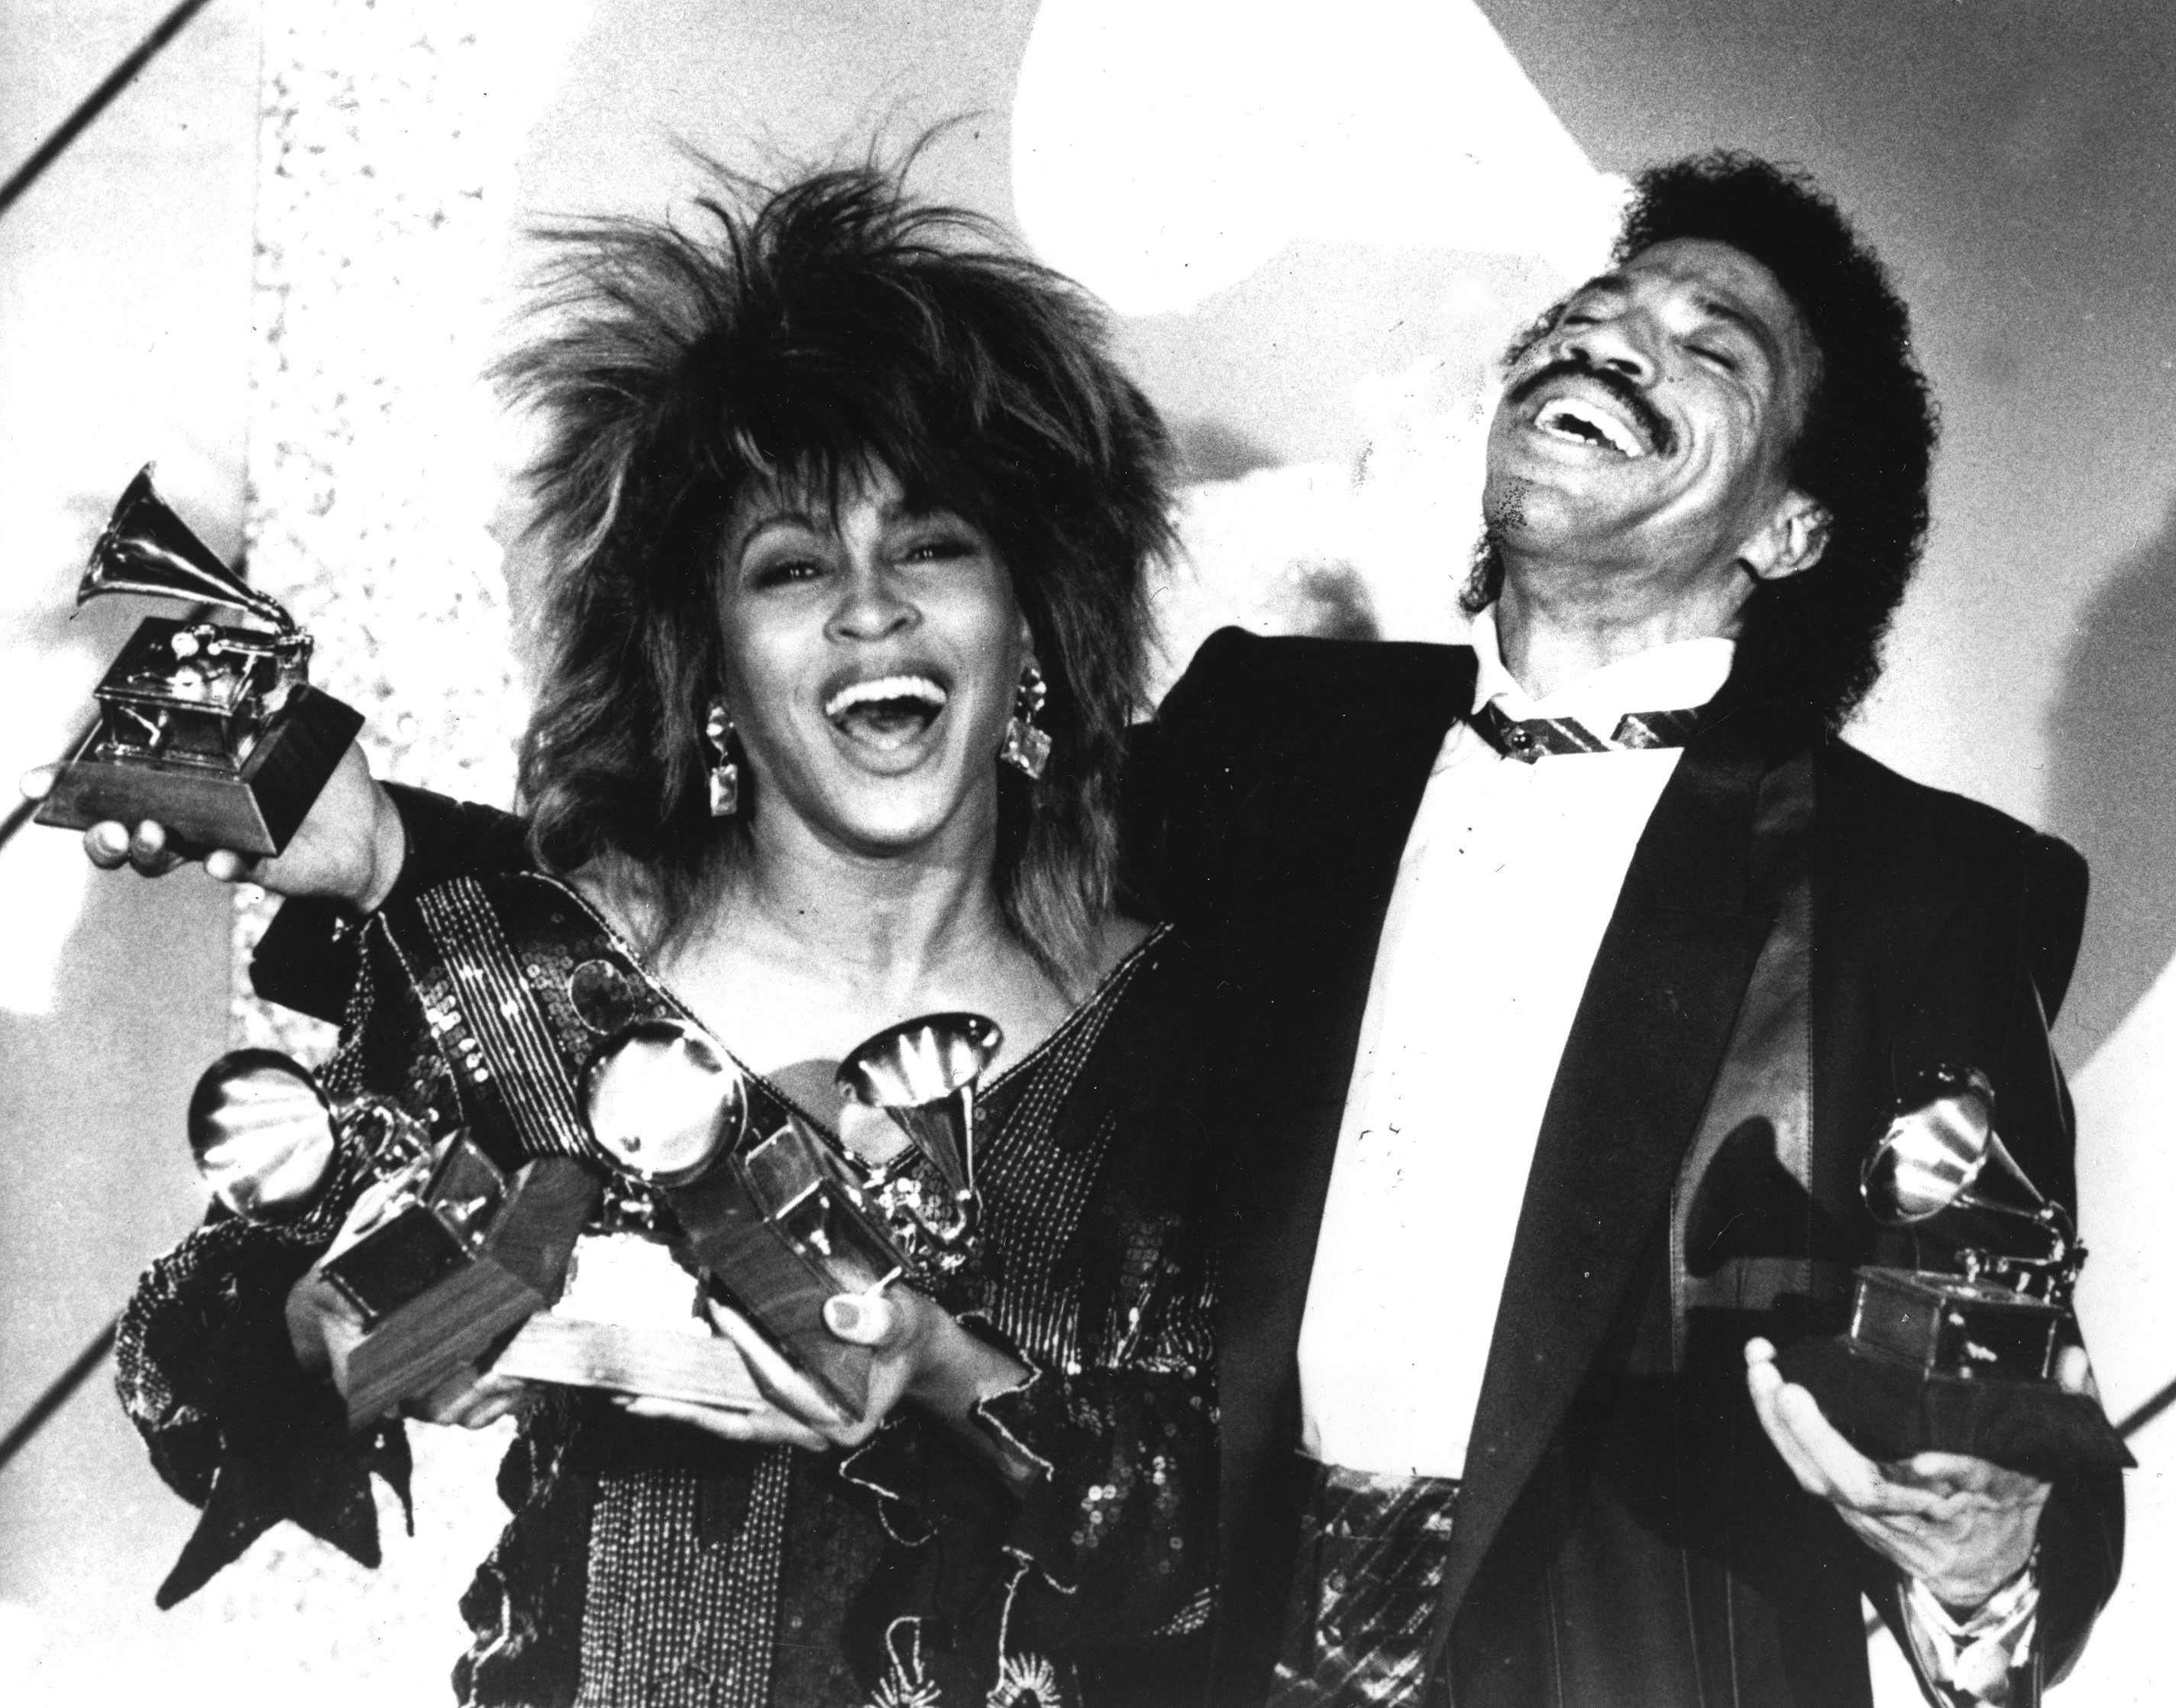 Tina Turner arrasó en los premios Grammy de 1985 gracias a "What's Love Got To Do With It"
(AP Foto/Lennox McLendon, Archivo)